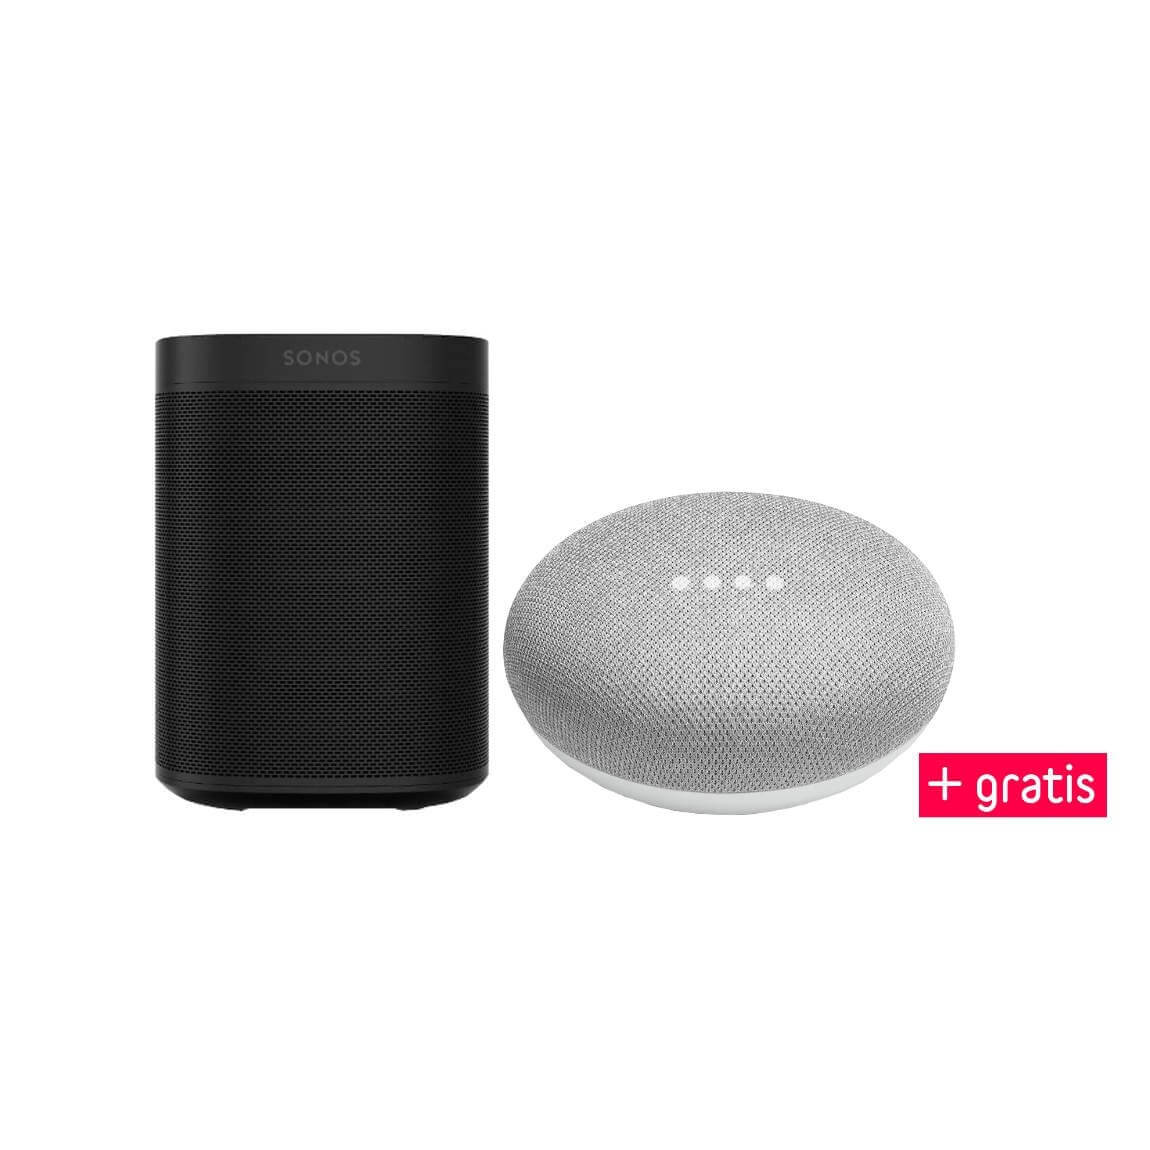 Sonos One Google Home